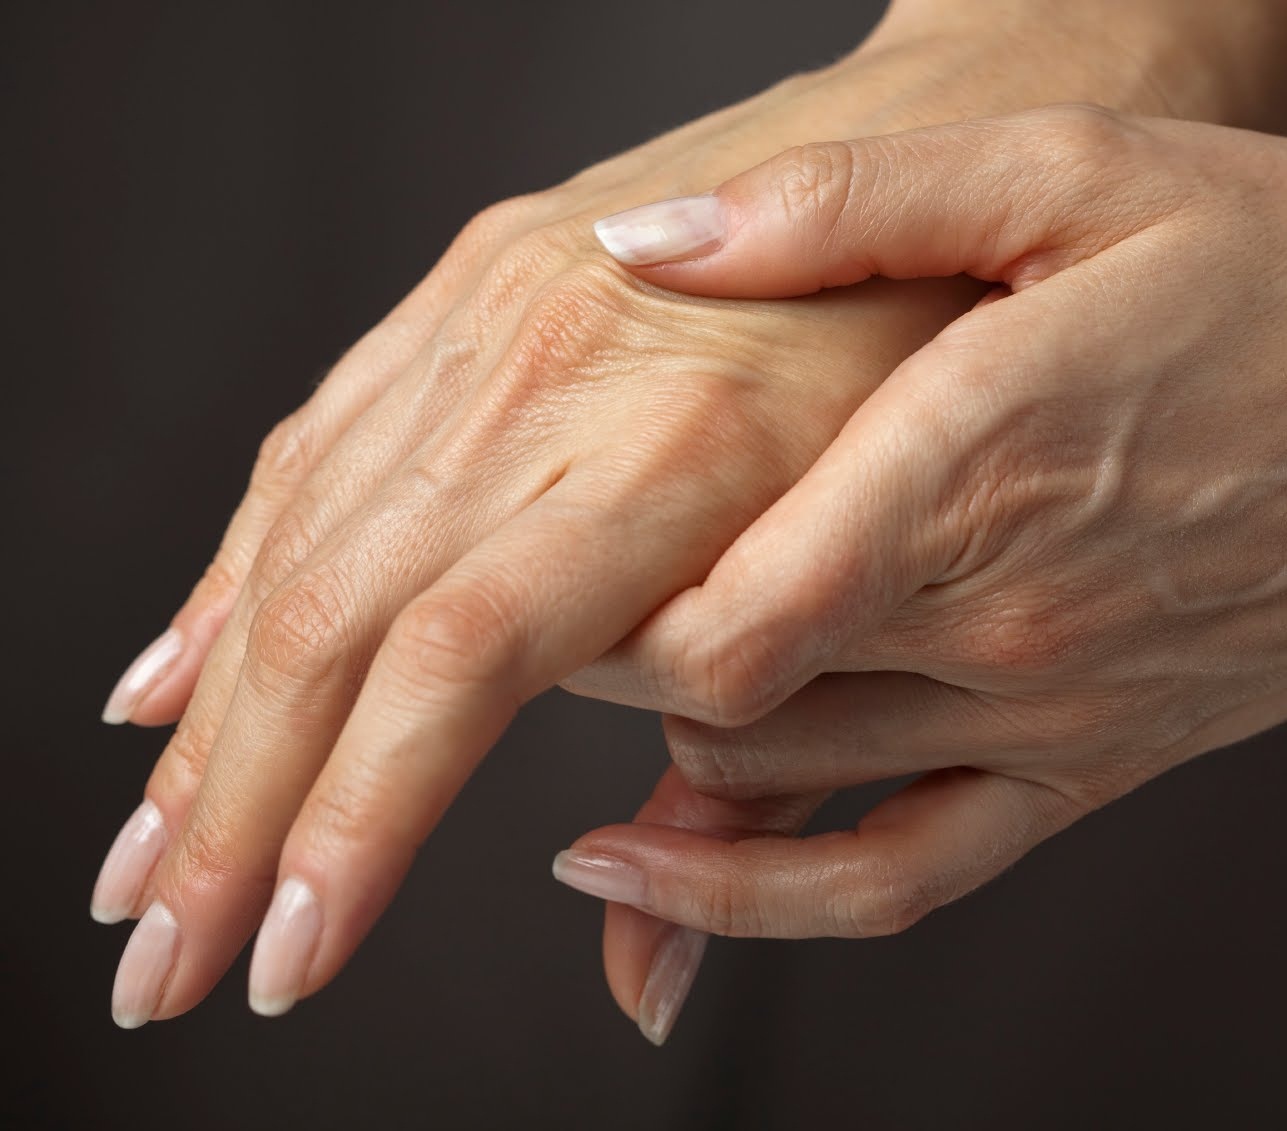 Артроз пальцев рук - симптомыи лечение гимнастикой. Лучшие упражнения при артрозе пальцев